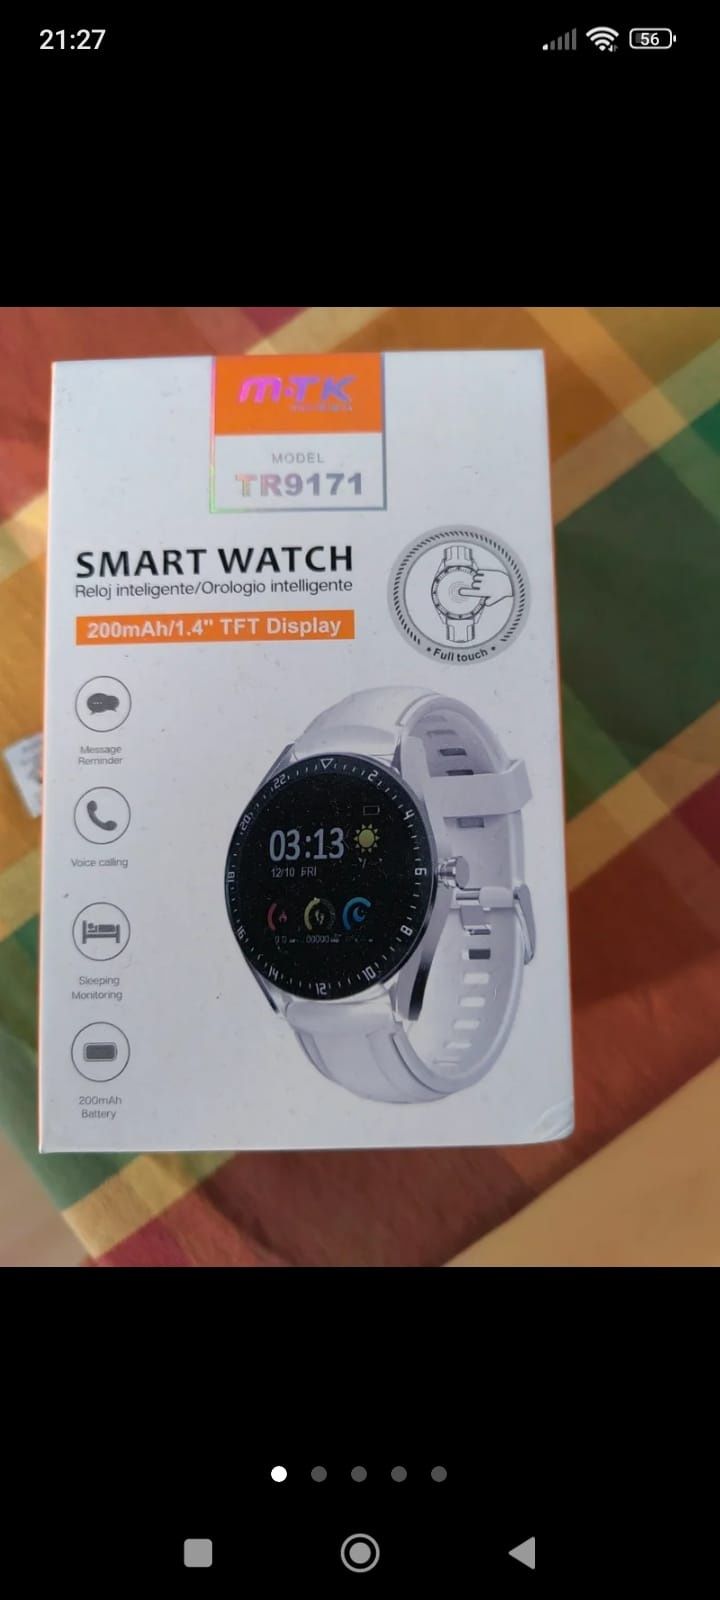 Smartwatch como novo em caixa